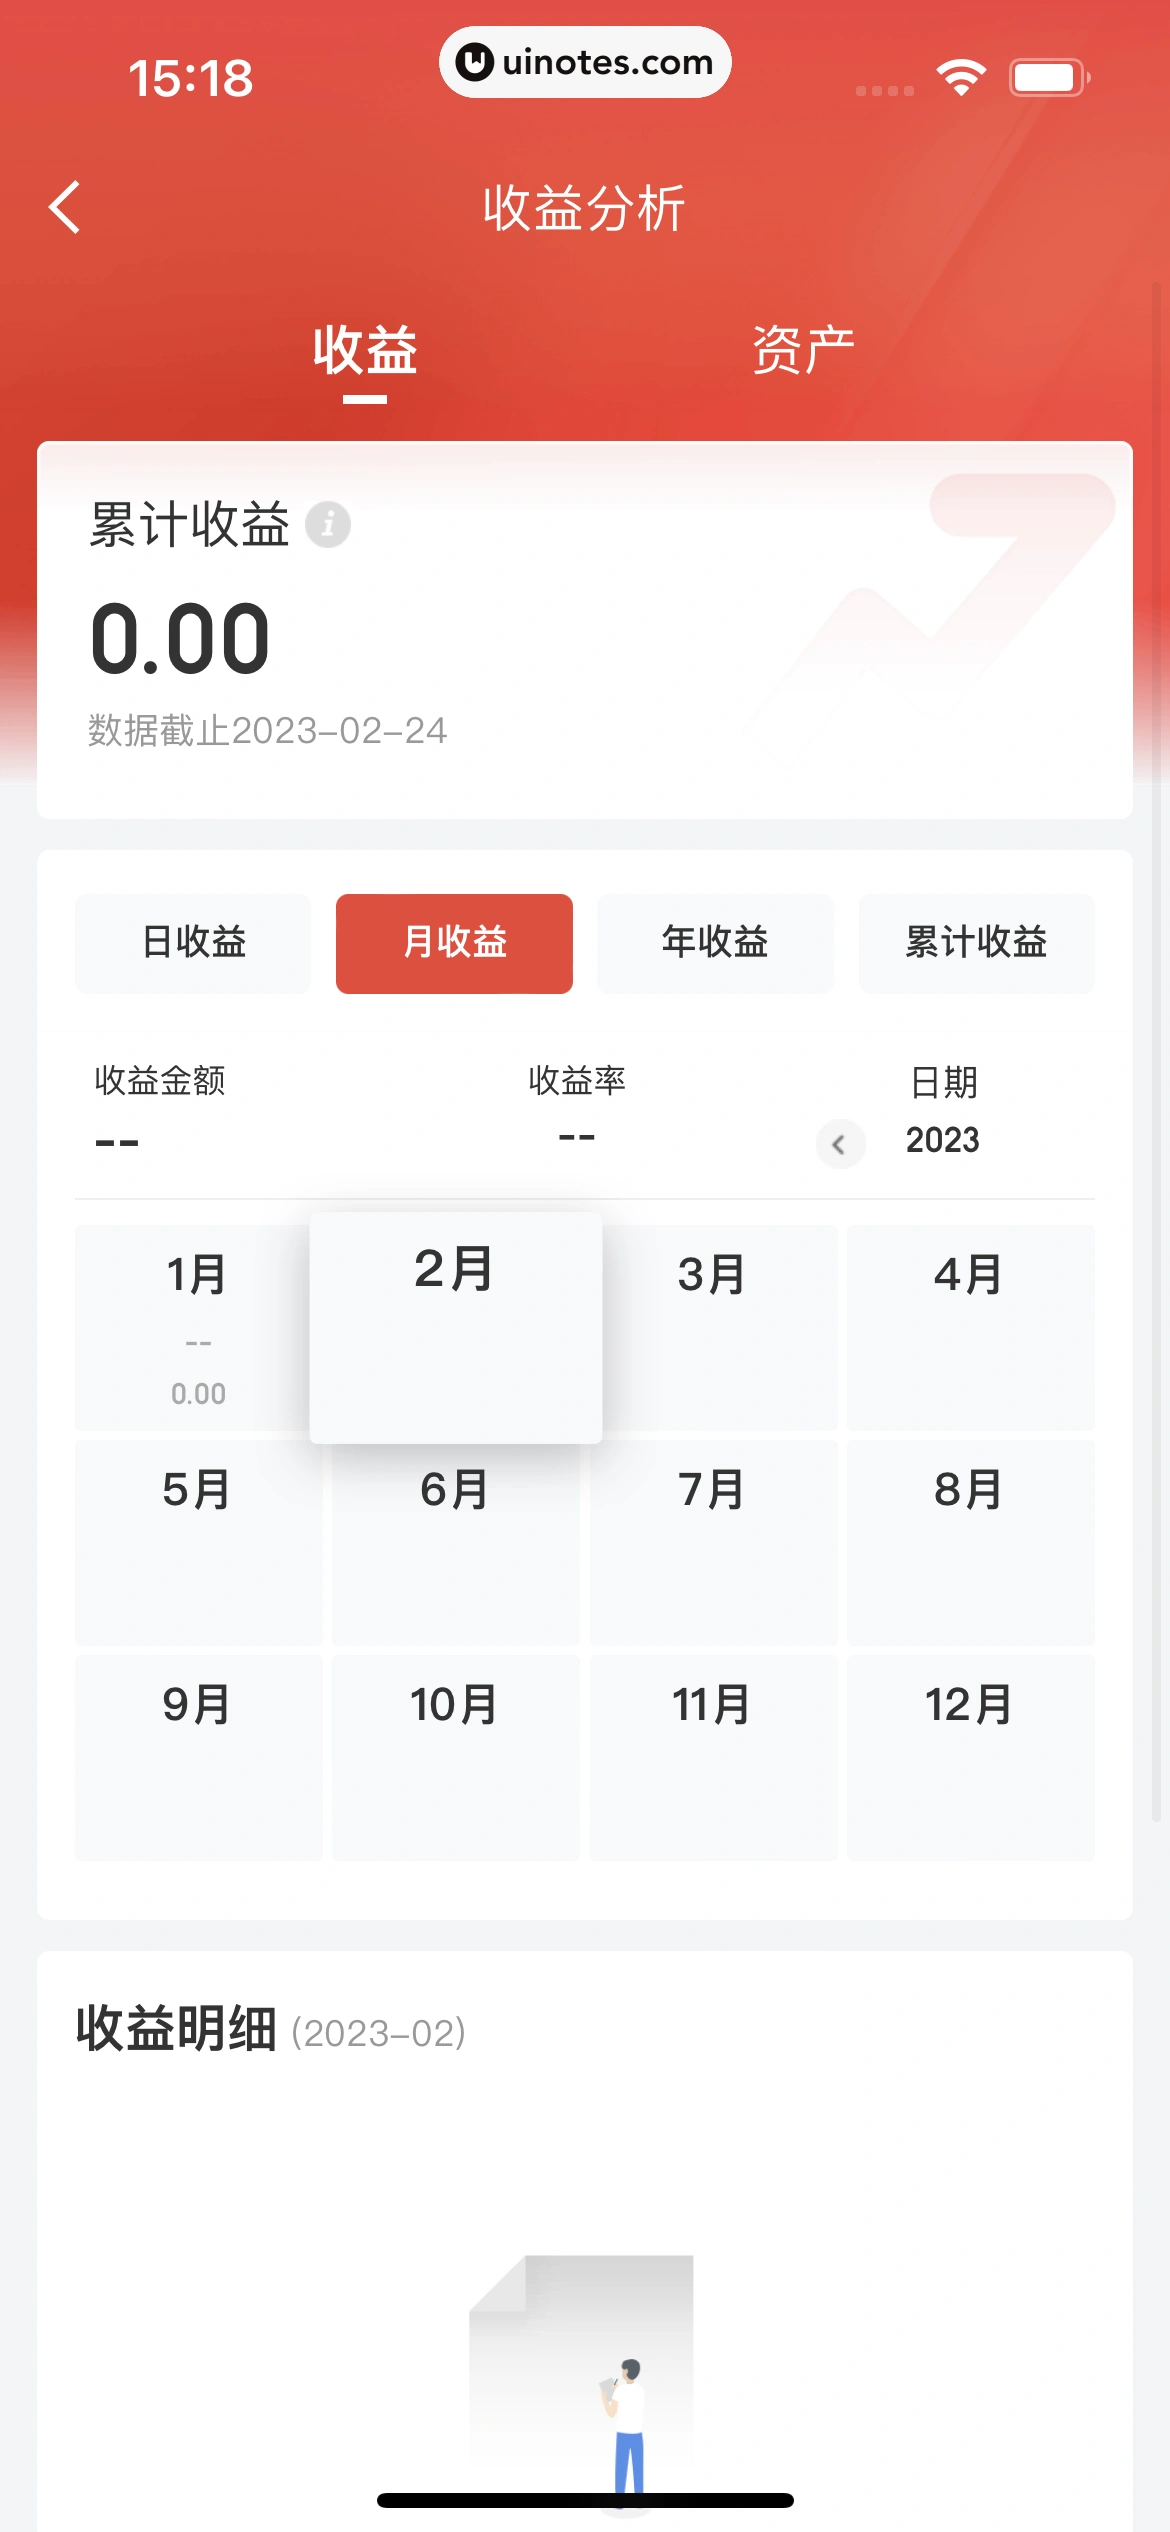 京东金融 App 截图 267 - UI Notes